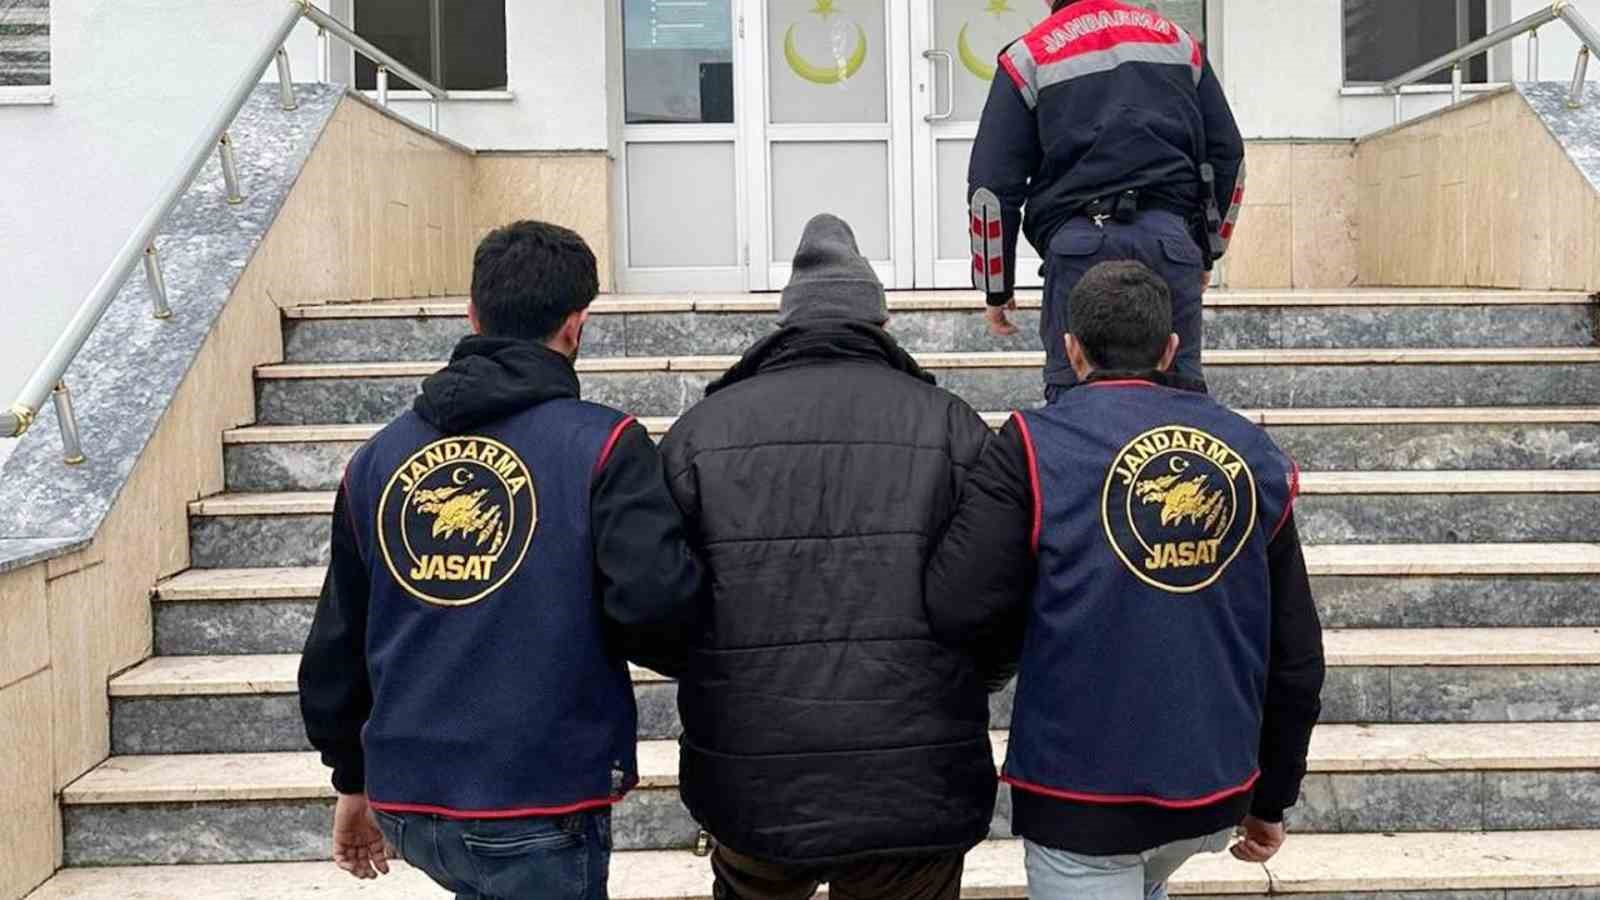 Kırıkkale’de "Mercek-2 Operasyonu": 30 yıl hapis cezası bulunan firari yakalandı